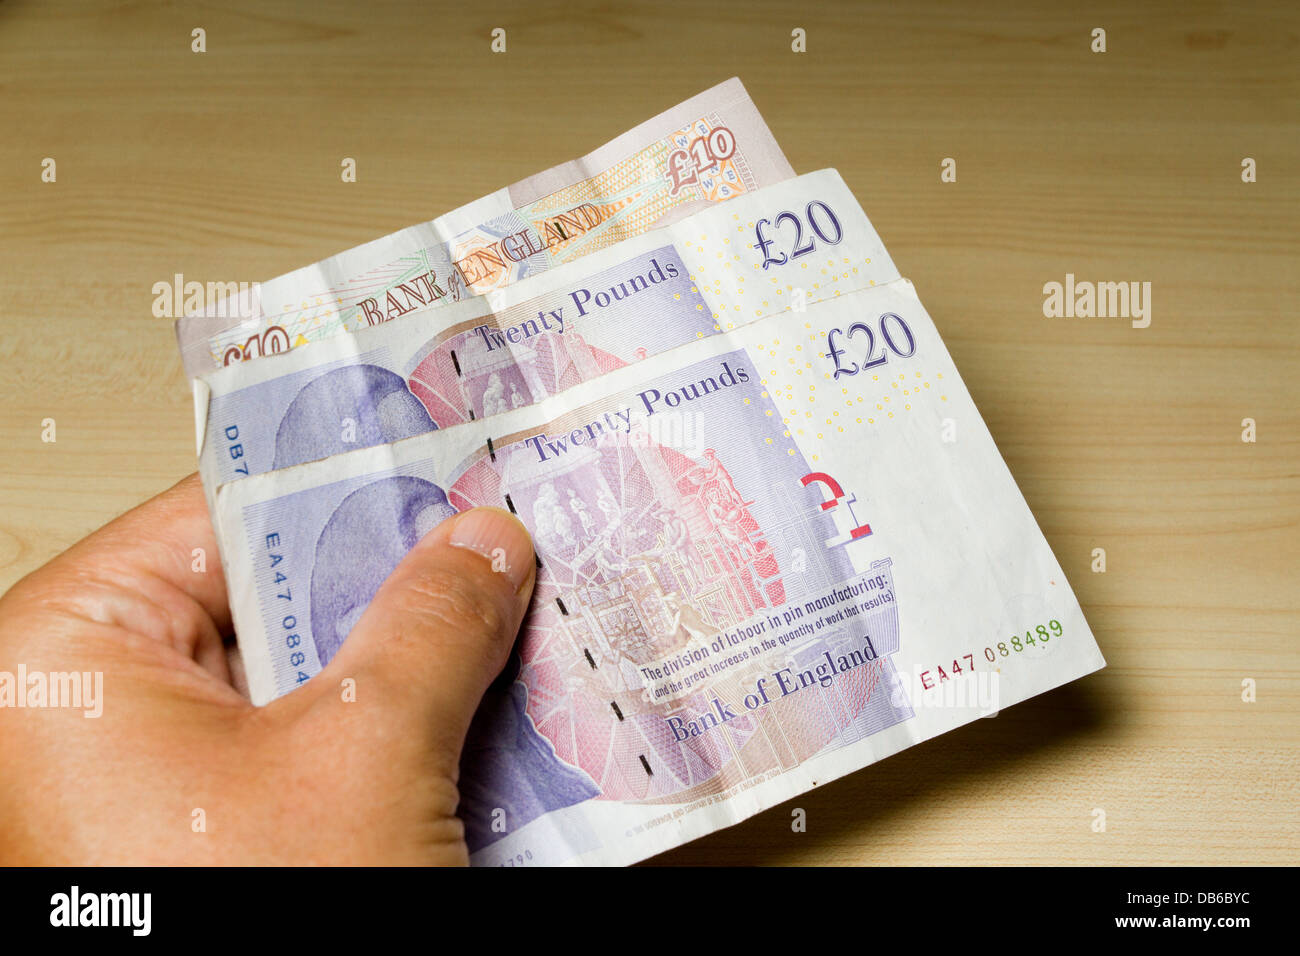 Mantenga la mano de un hombre de 50 libras esterlinas en efectivo, compuesto de 2 £20 £10 libras y 1 notas, Inglaterra, Reino Unido. Foto de stock